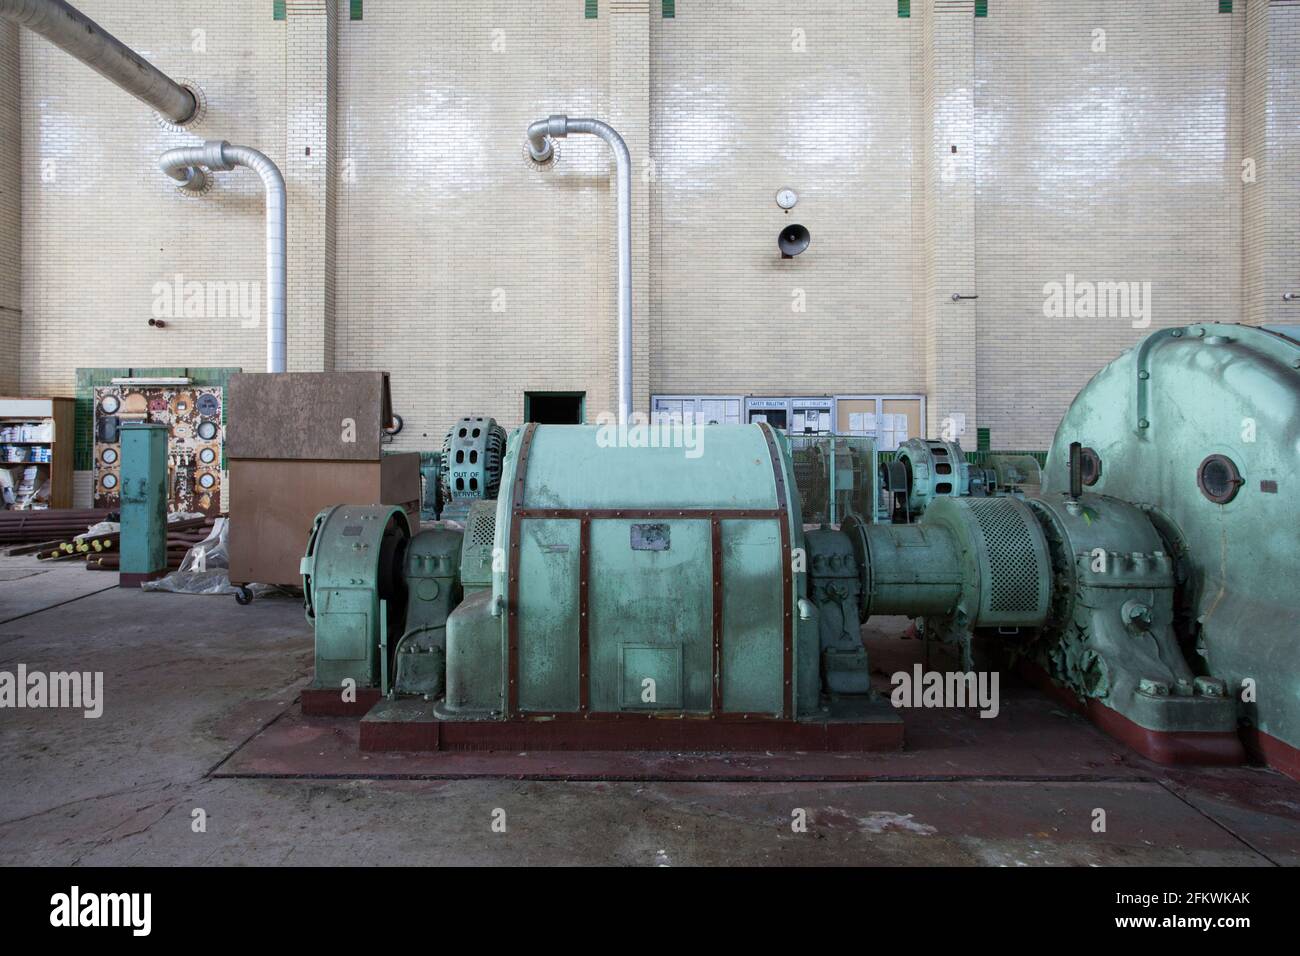 Interior de la planta de energía industrial abandonada en descomposición. Foto de stock